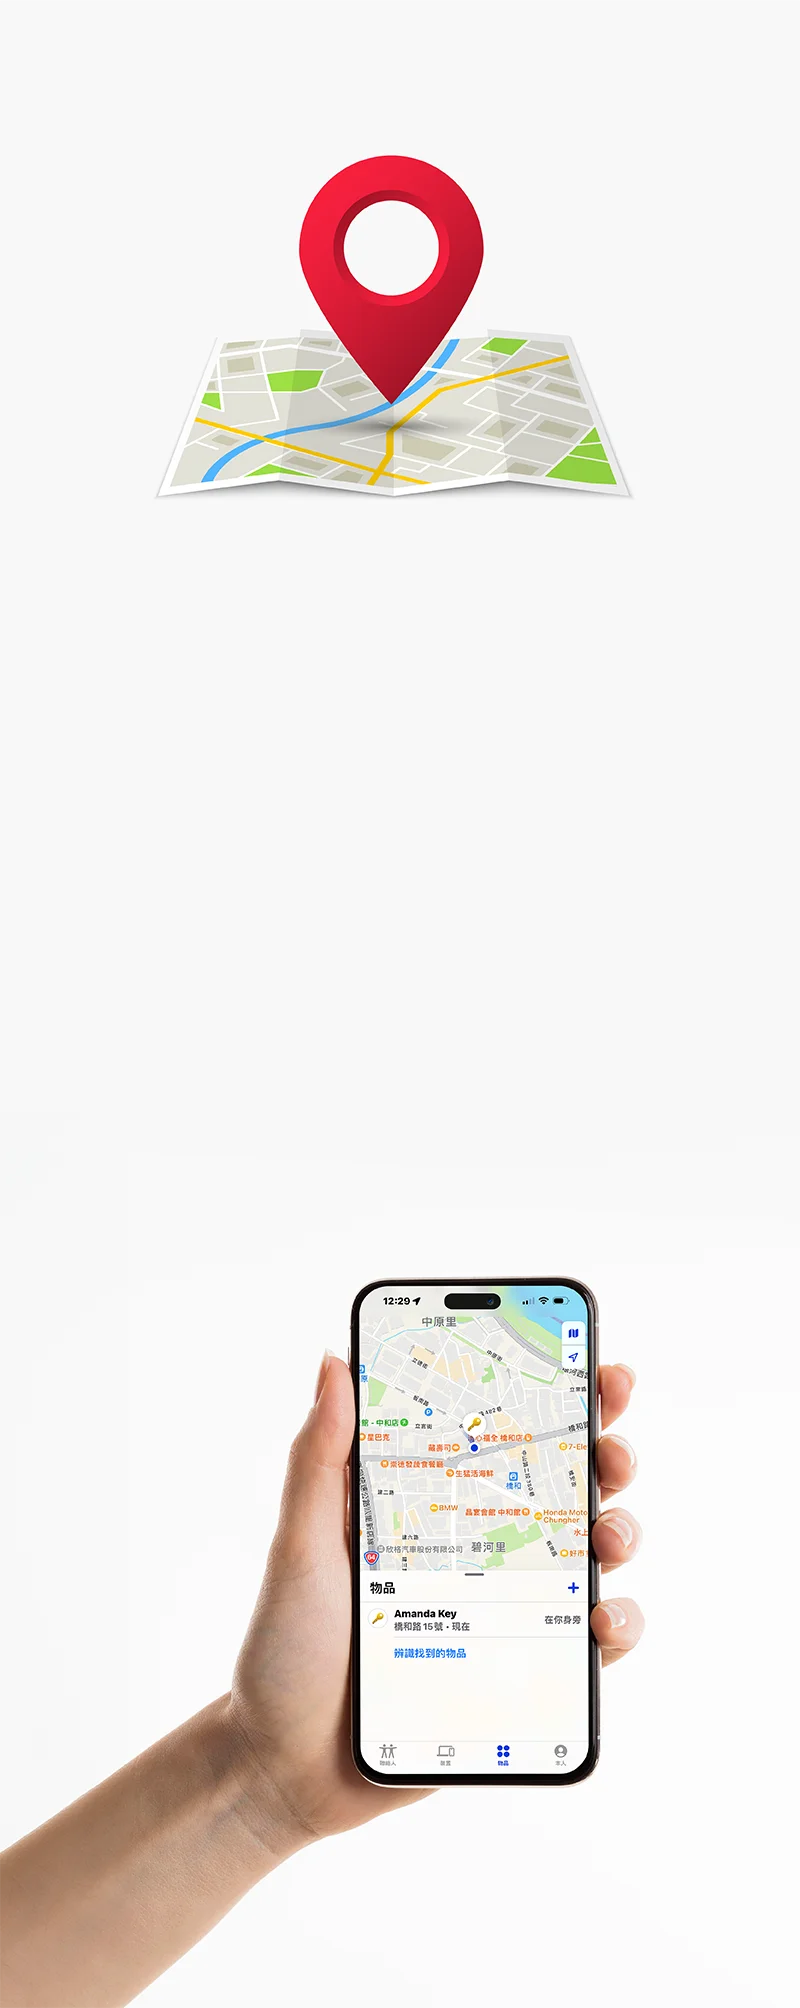 手持手機顯示App畫面及地圖定位圖片-直版